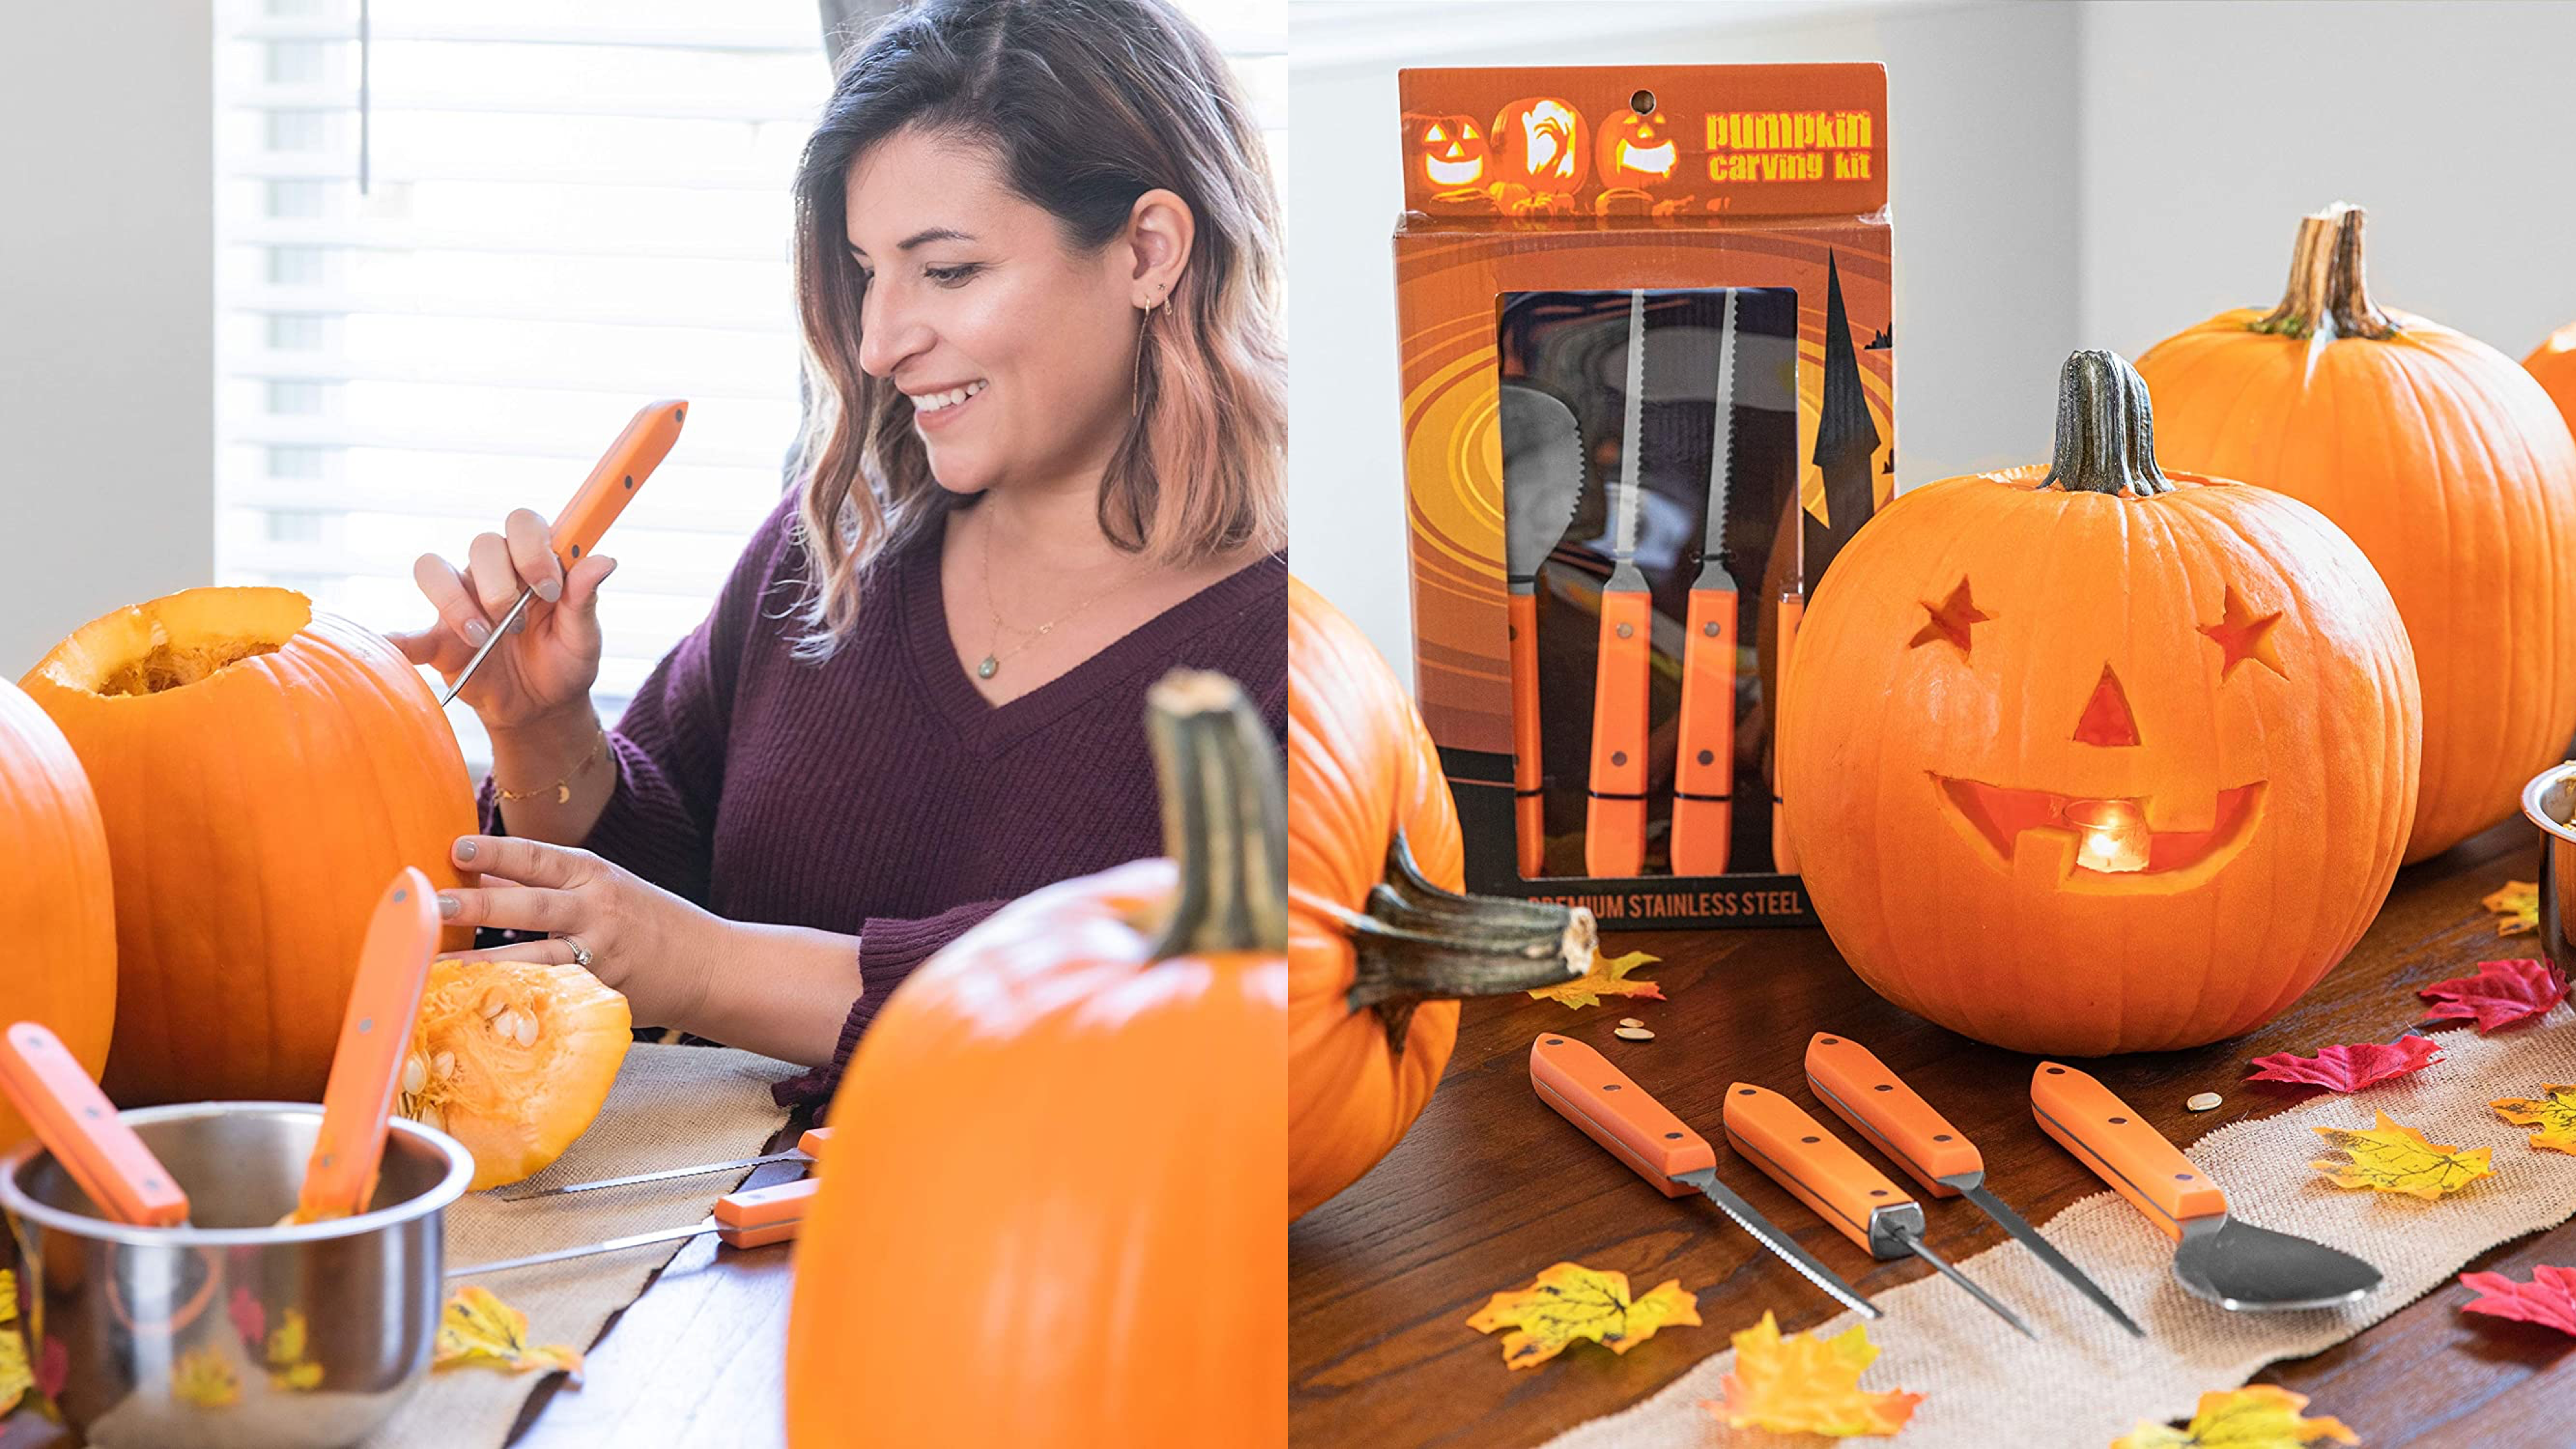 pumpkin carving tools